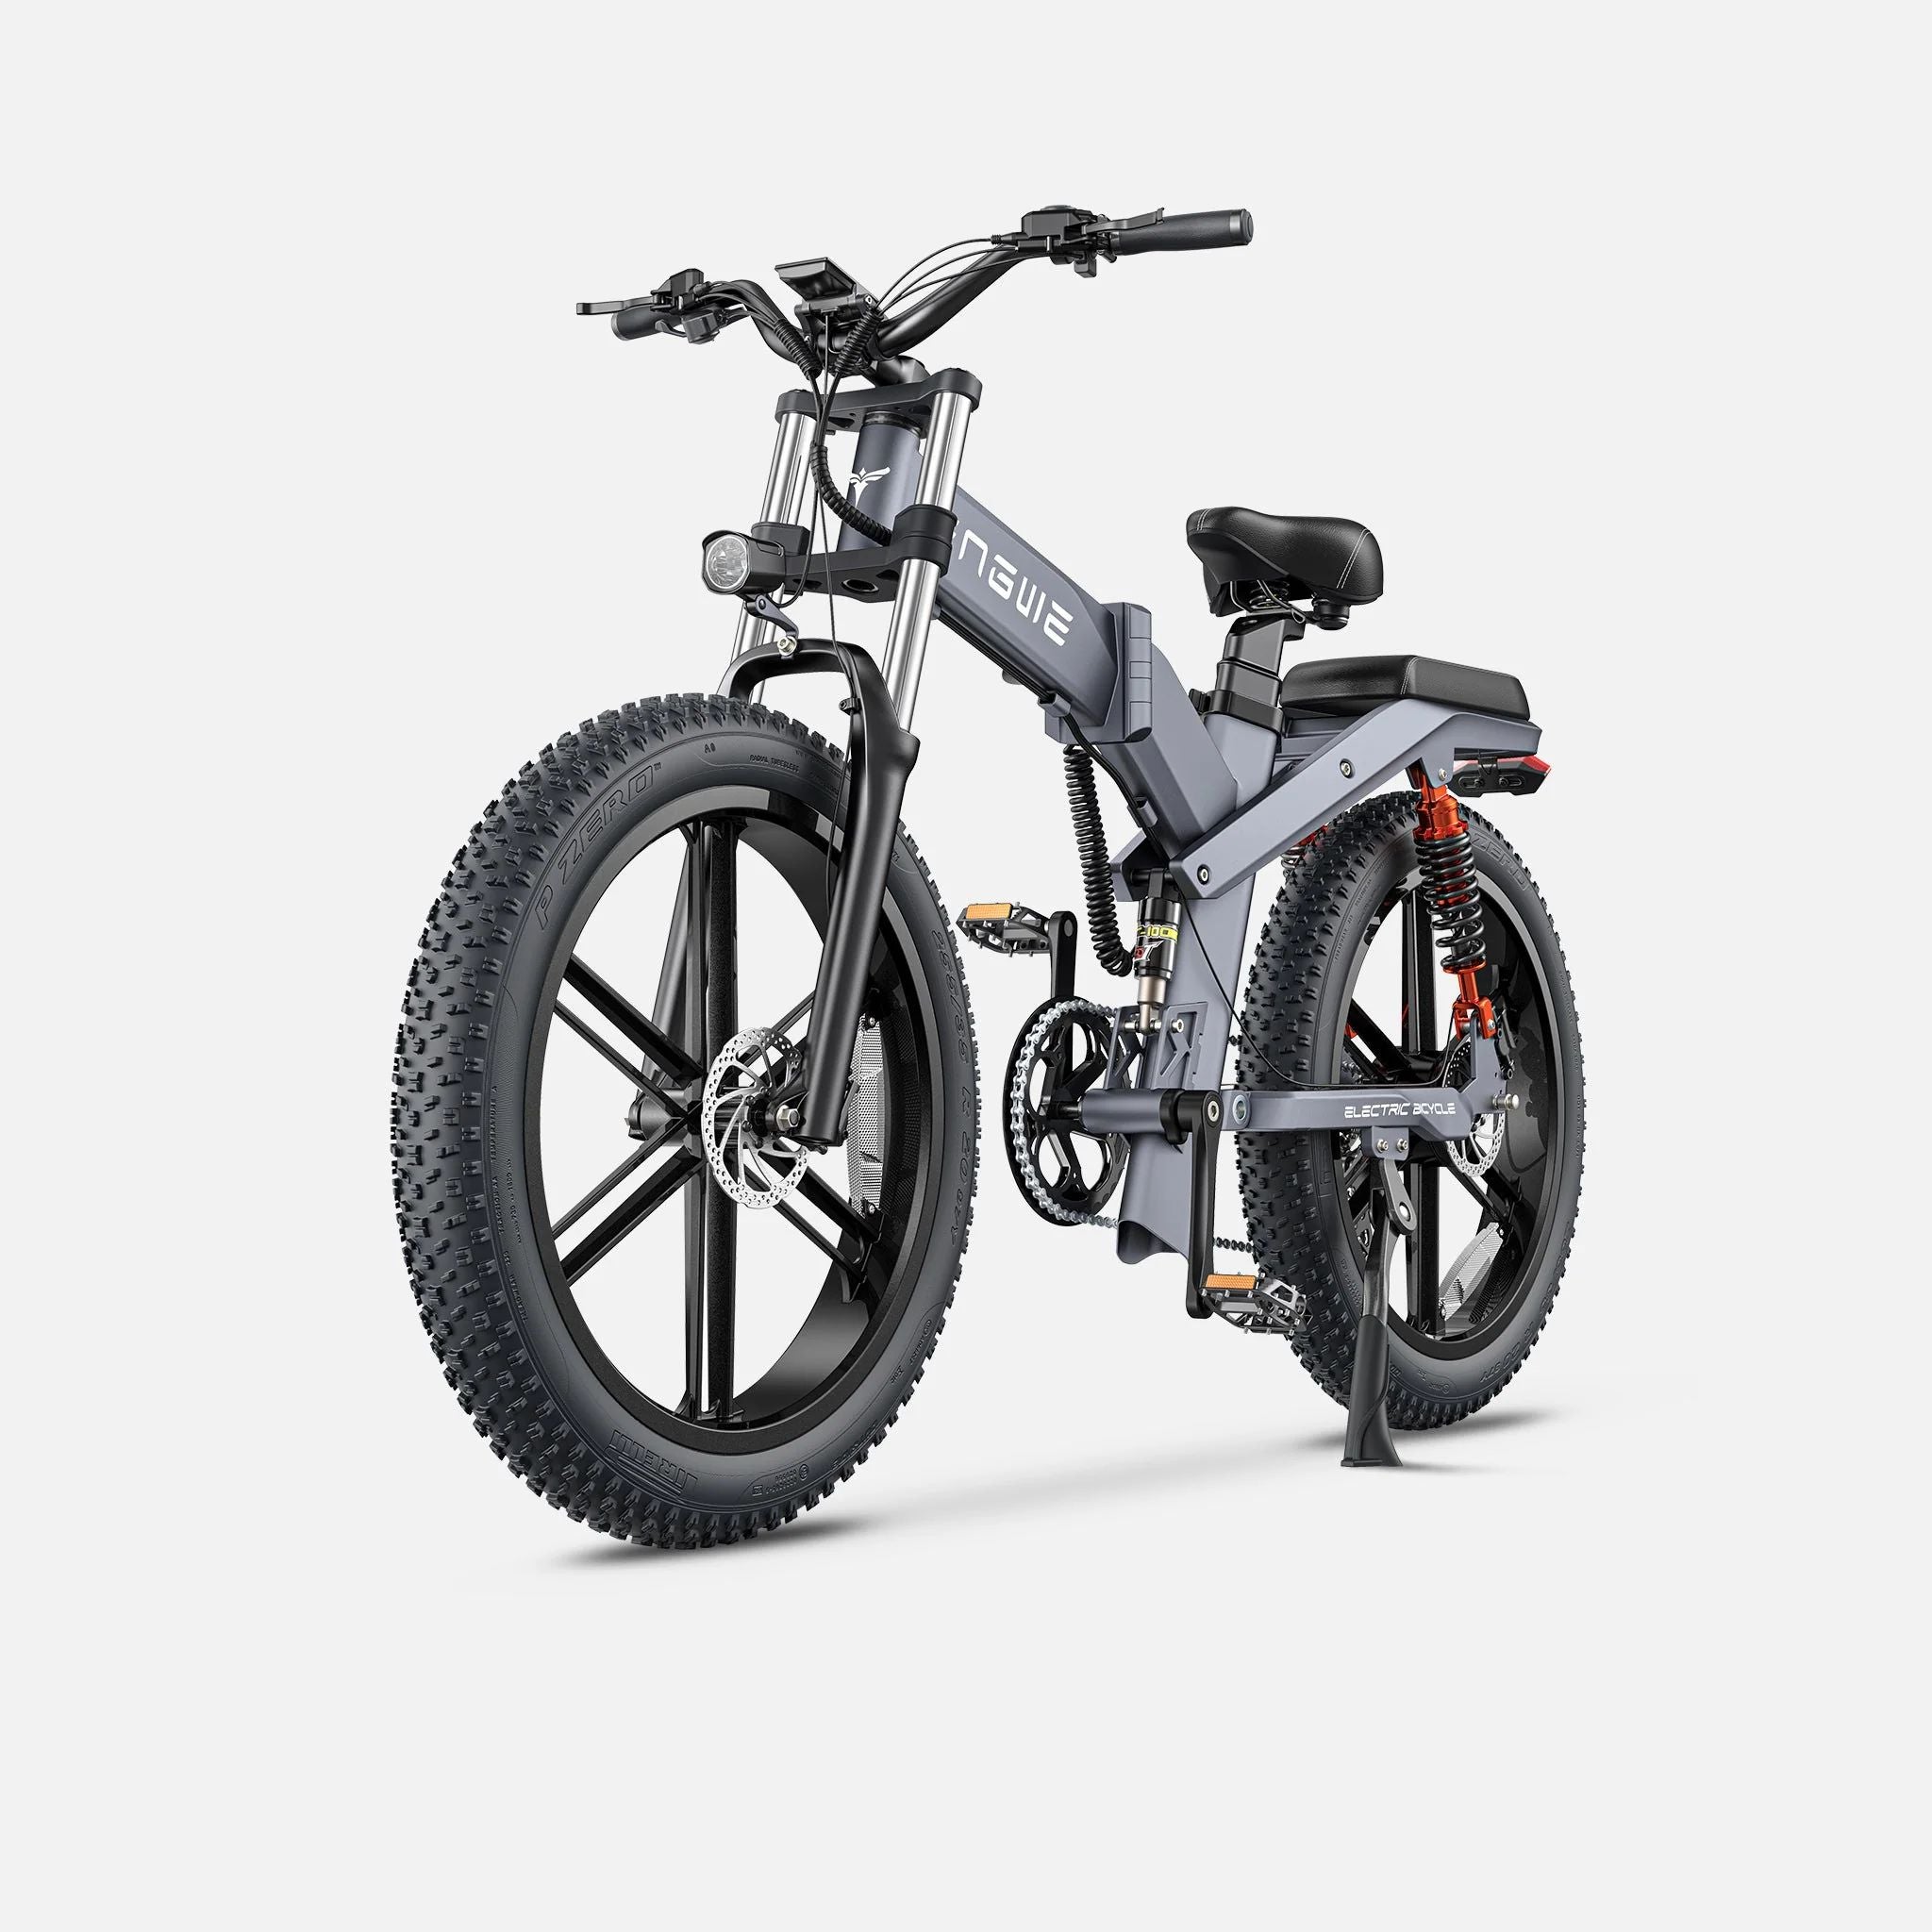 ENGWE X26 10AH - Potente bicicleta elétrica | Autonomia de 45KM | Disco de freio | Cor cinza